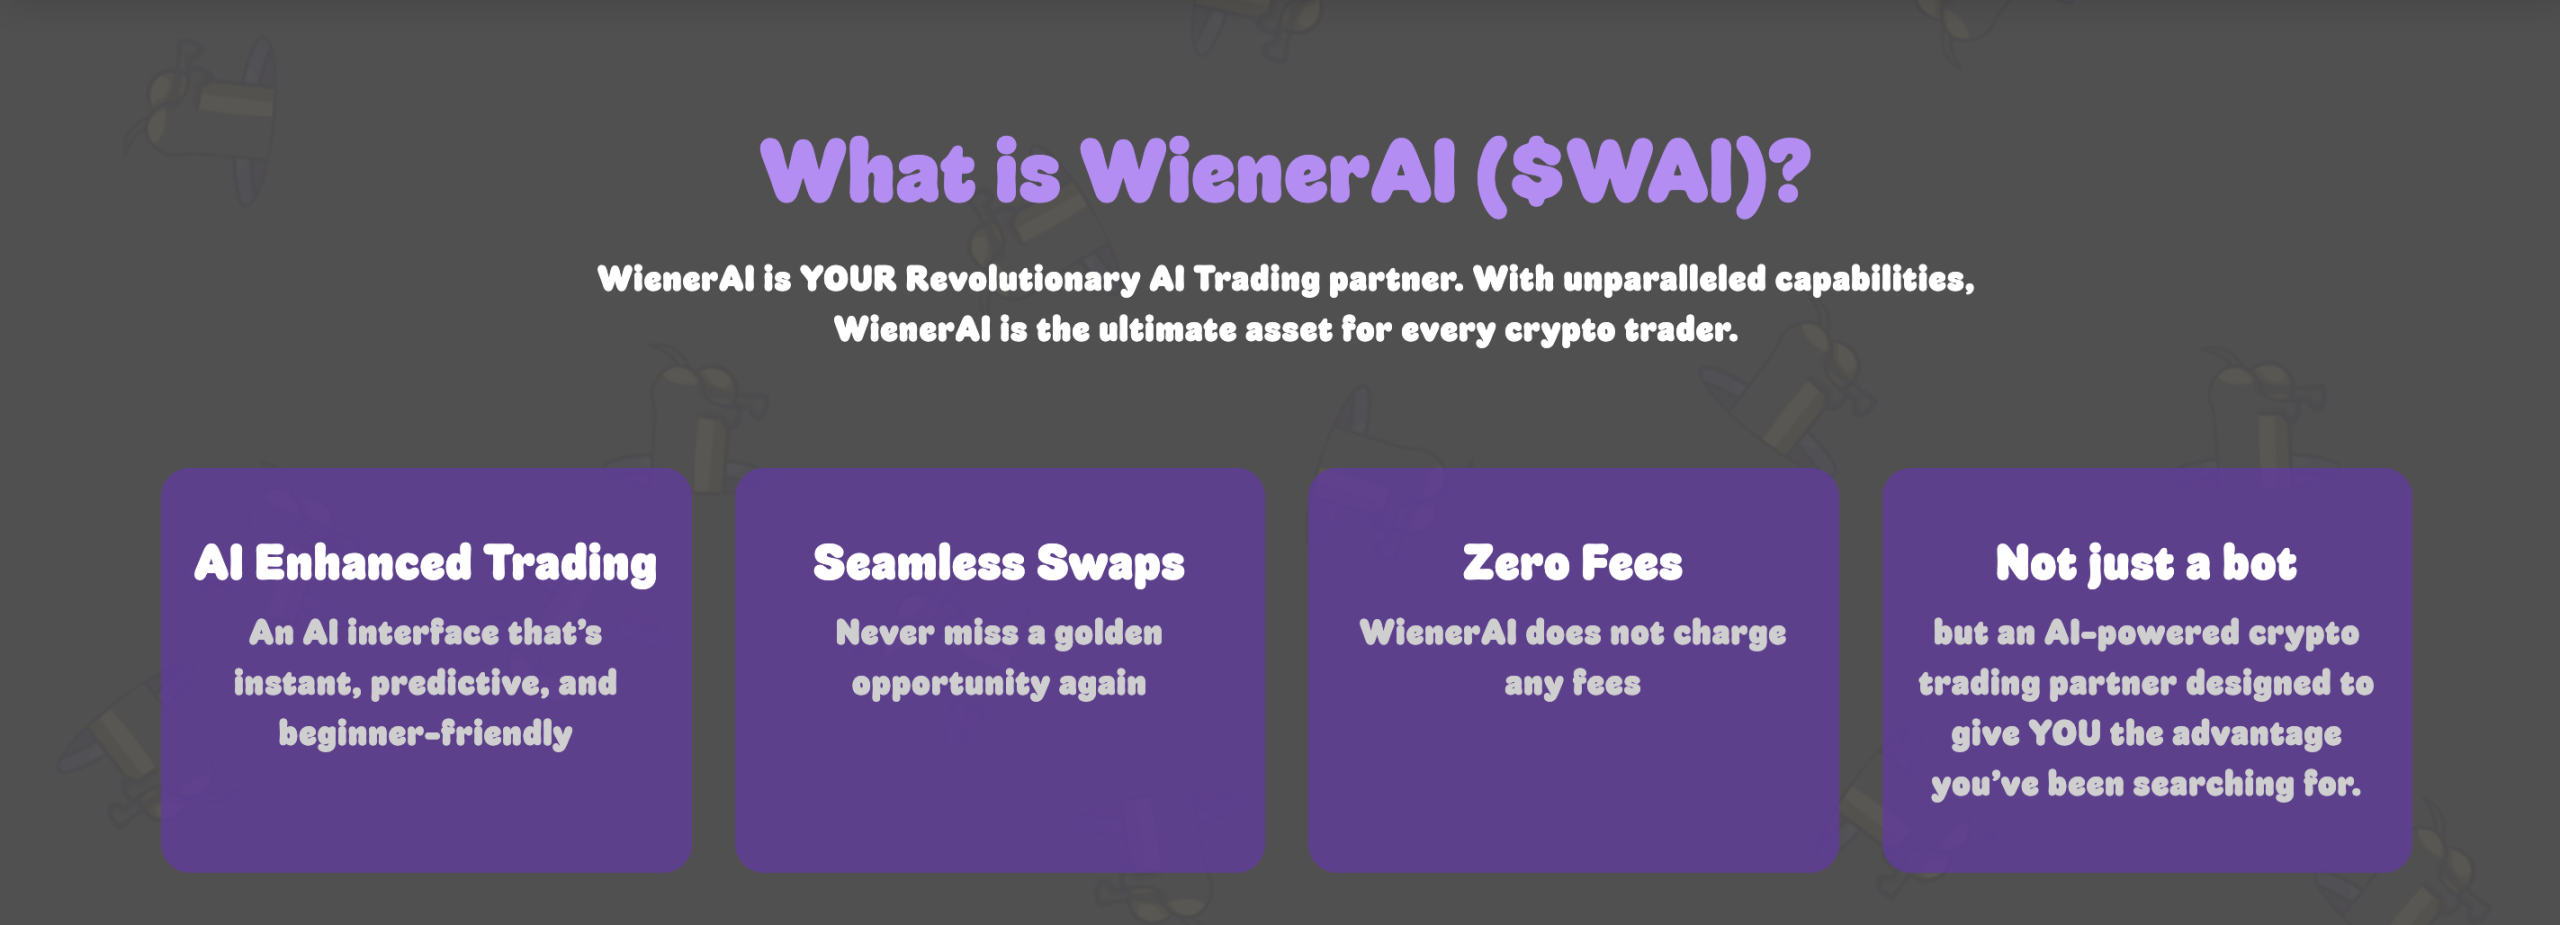 What is WienerAI?